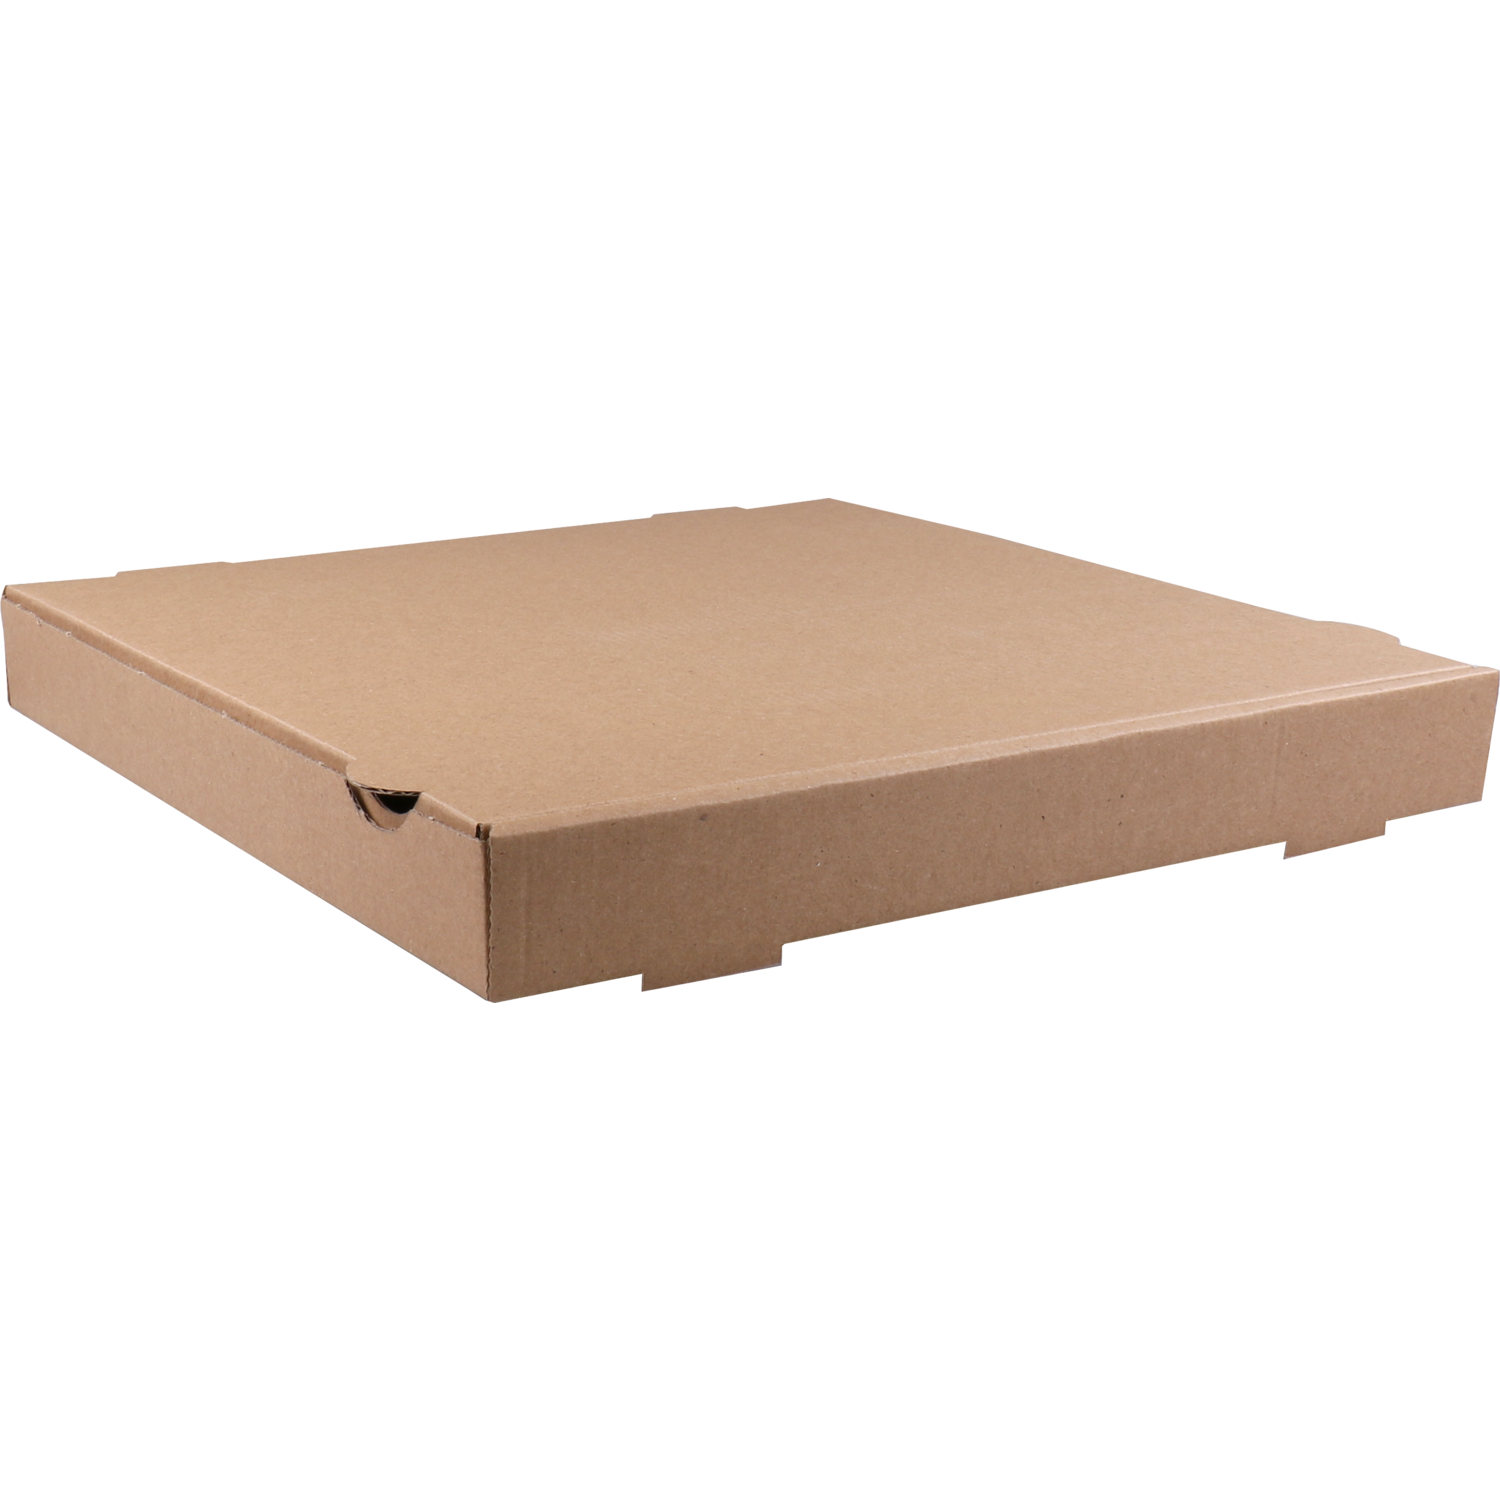  Pizza box, corrugated cardboard, 33x33x4cm, americano, brown  1